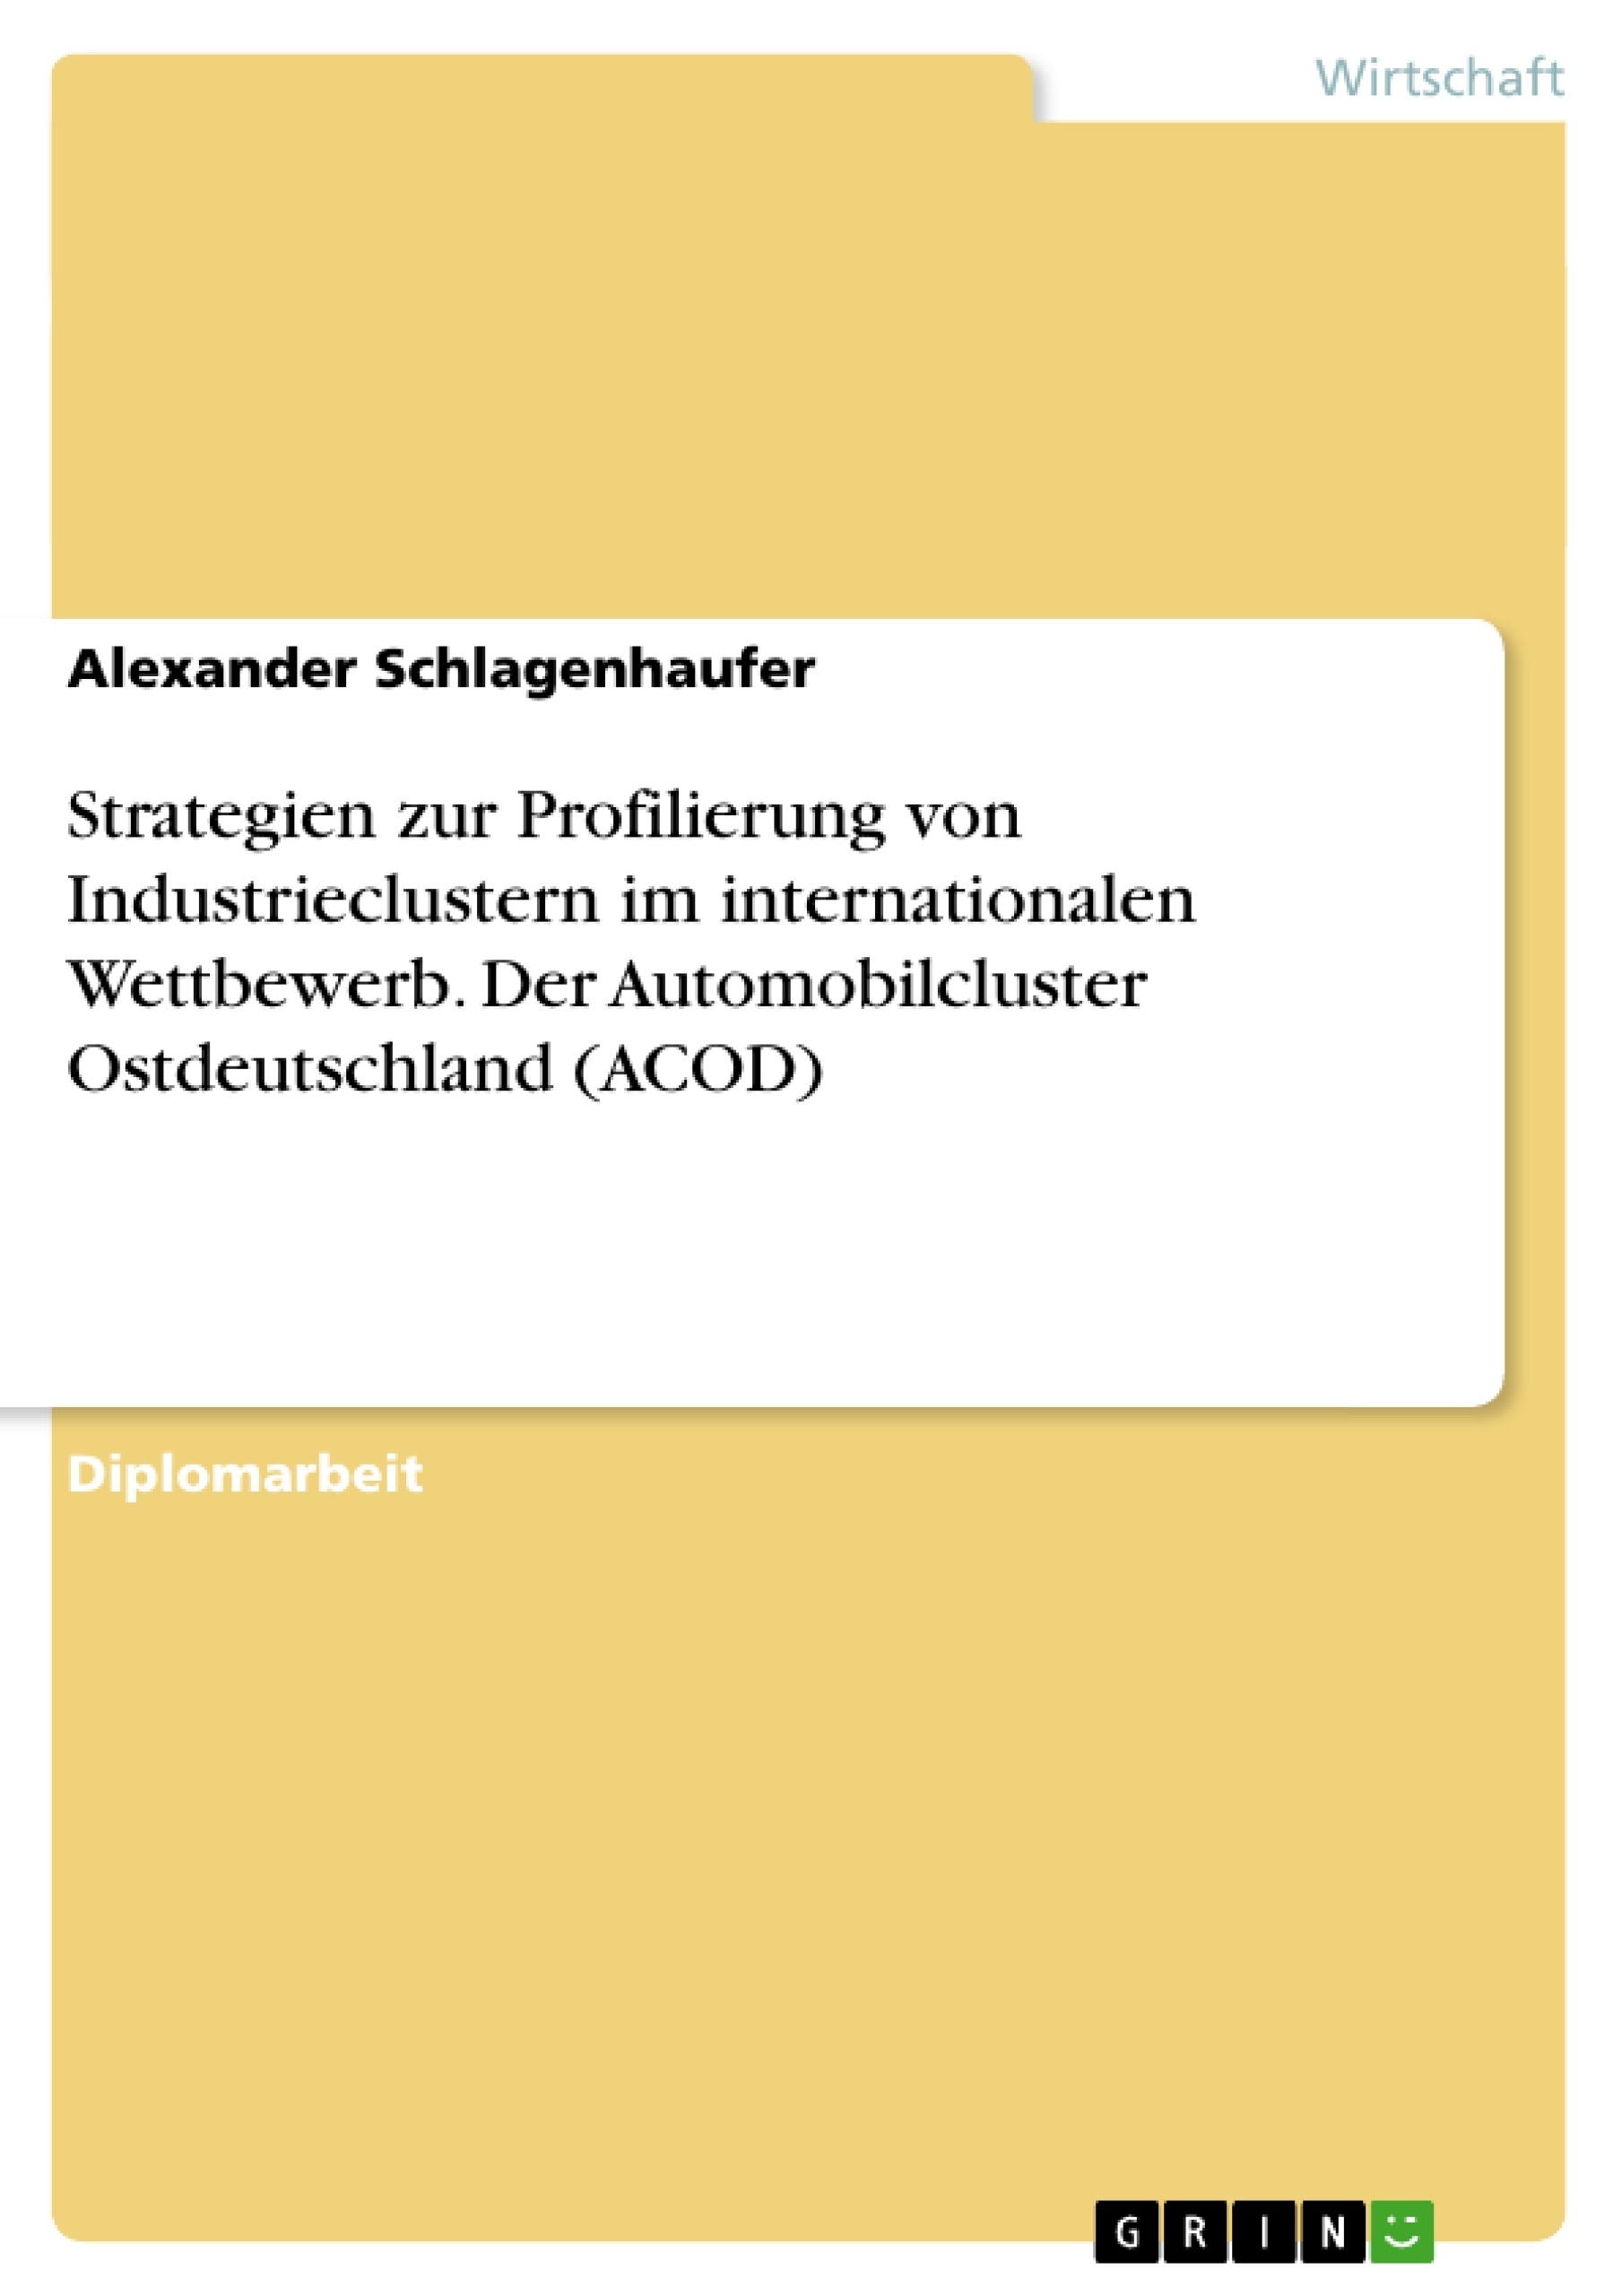 Título: Strategien zur Profilierung von Industrieclustern im internationalen Wettbewerb. Der Automobilcluster Ostdeutschland (ACOD)